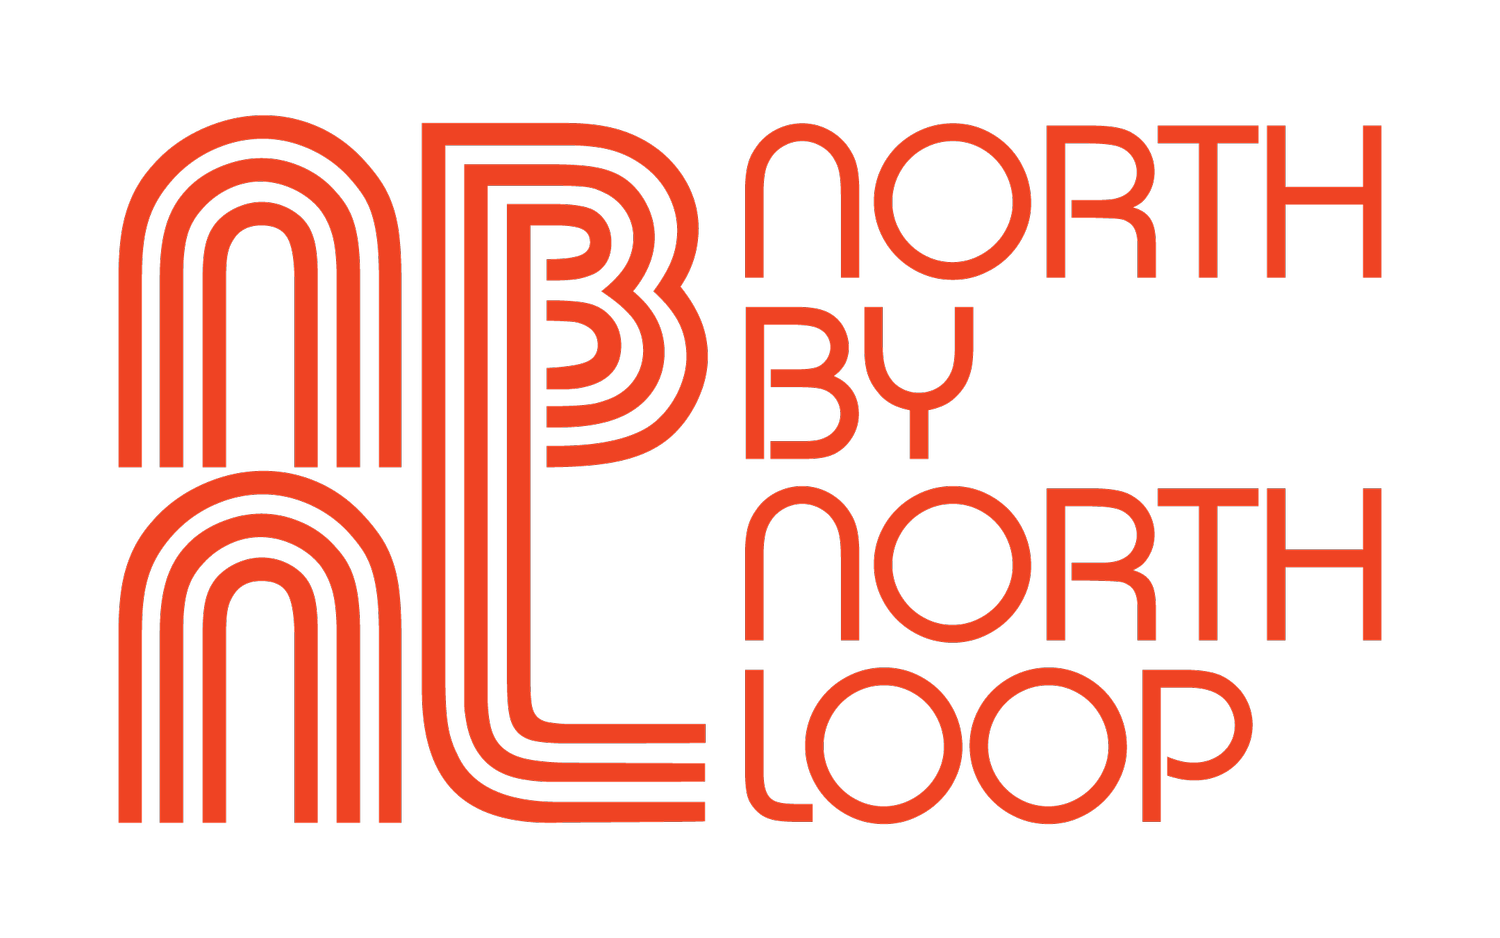 North by North Loop